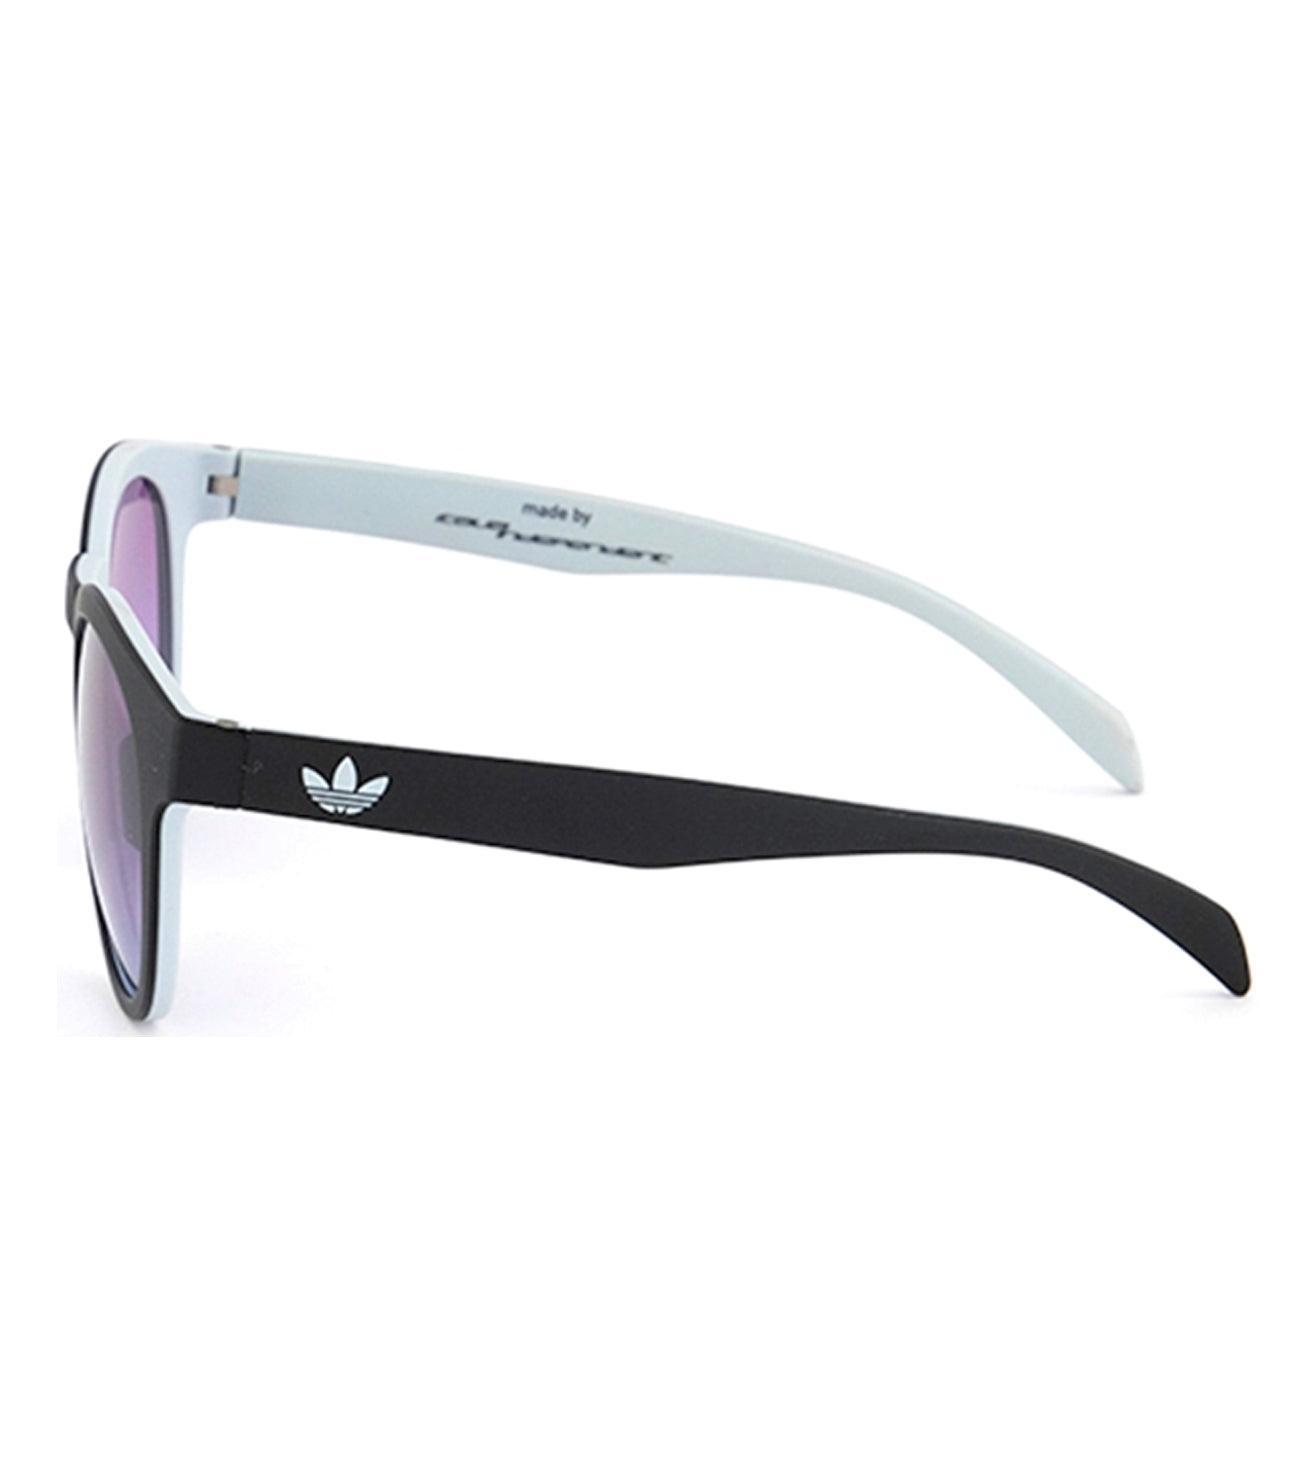 Adidas Originals Unisex Violet Round Sunglasses